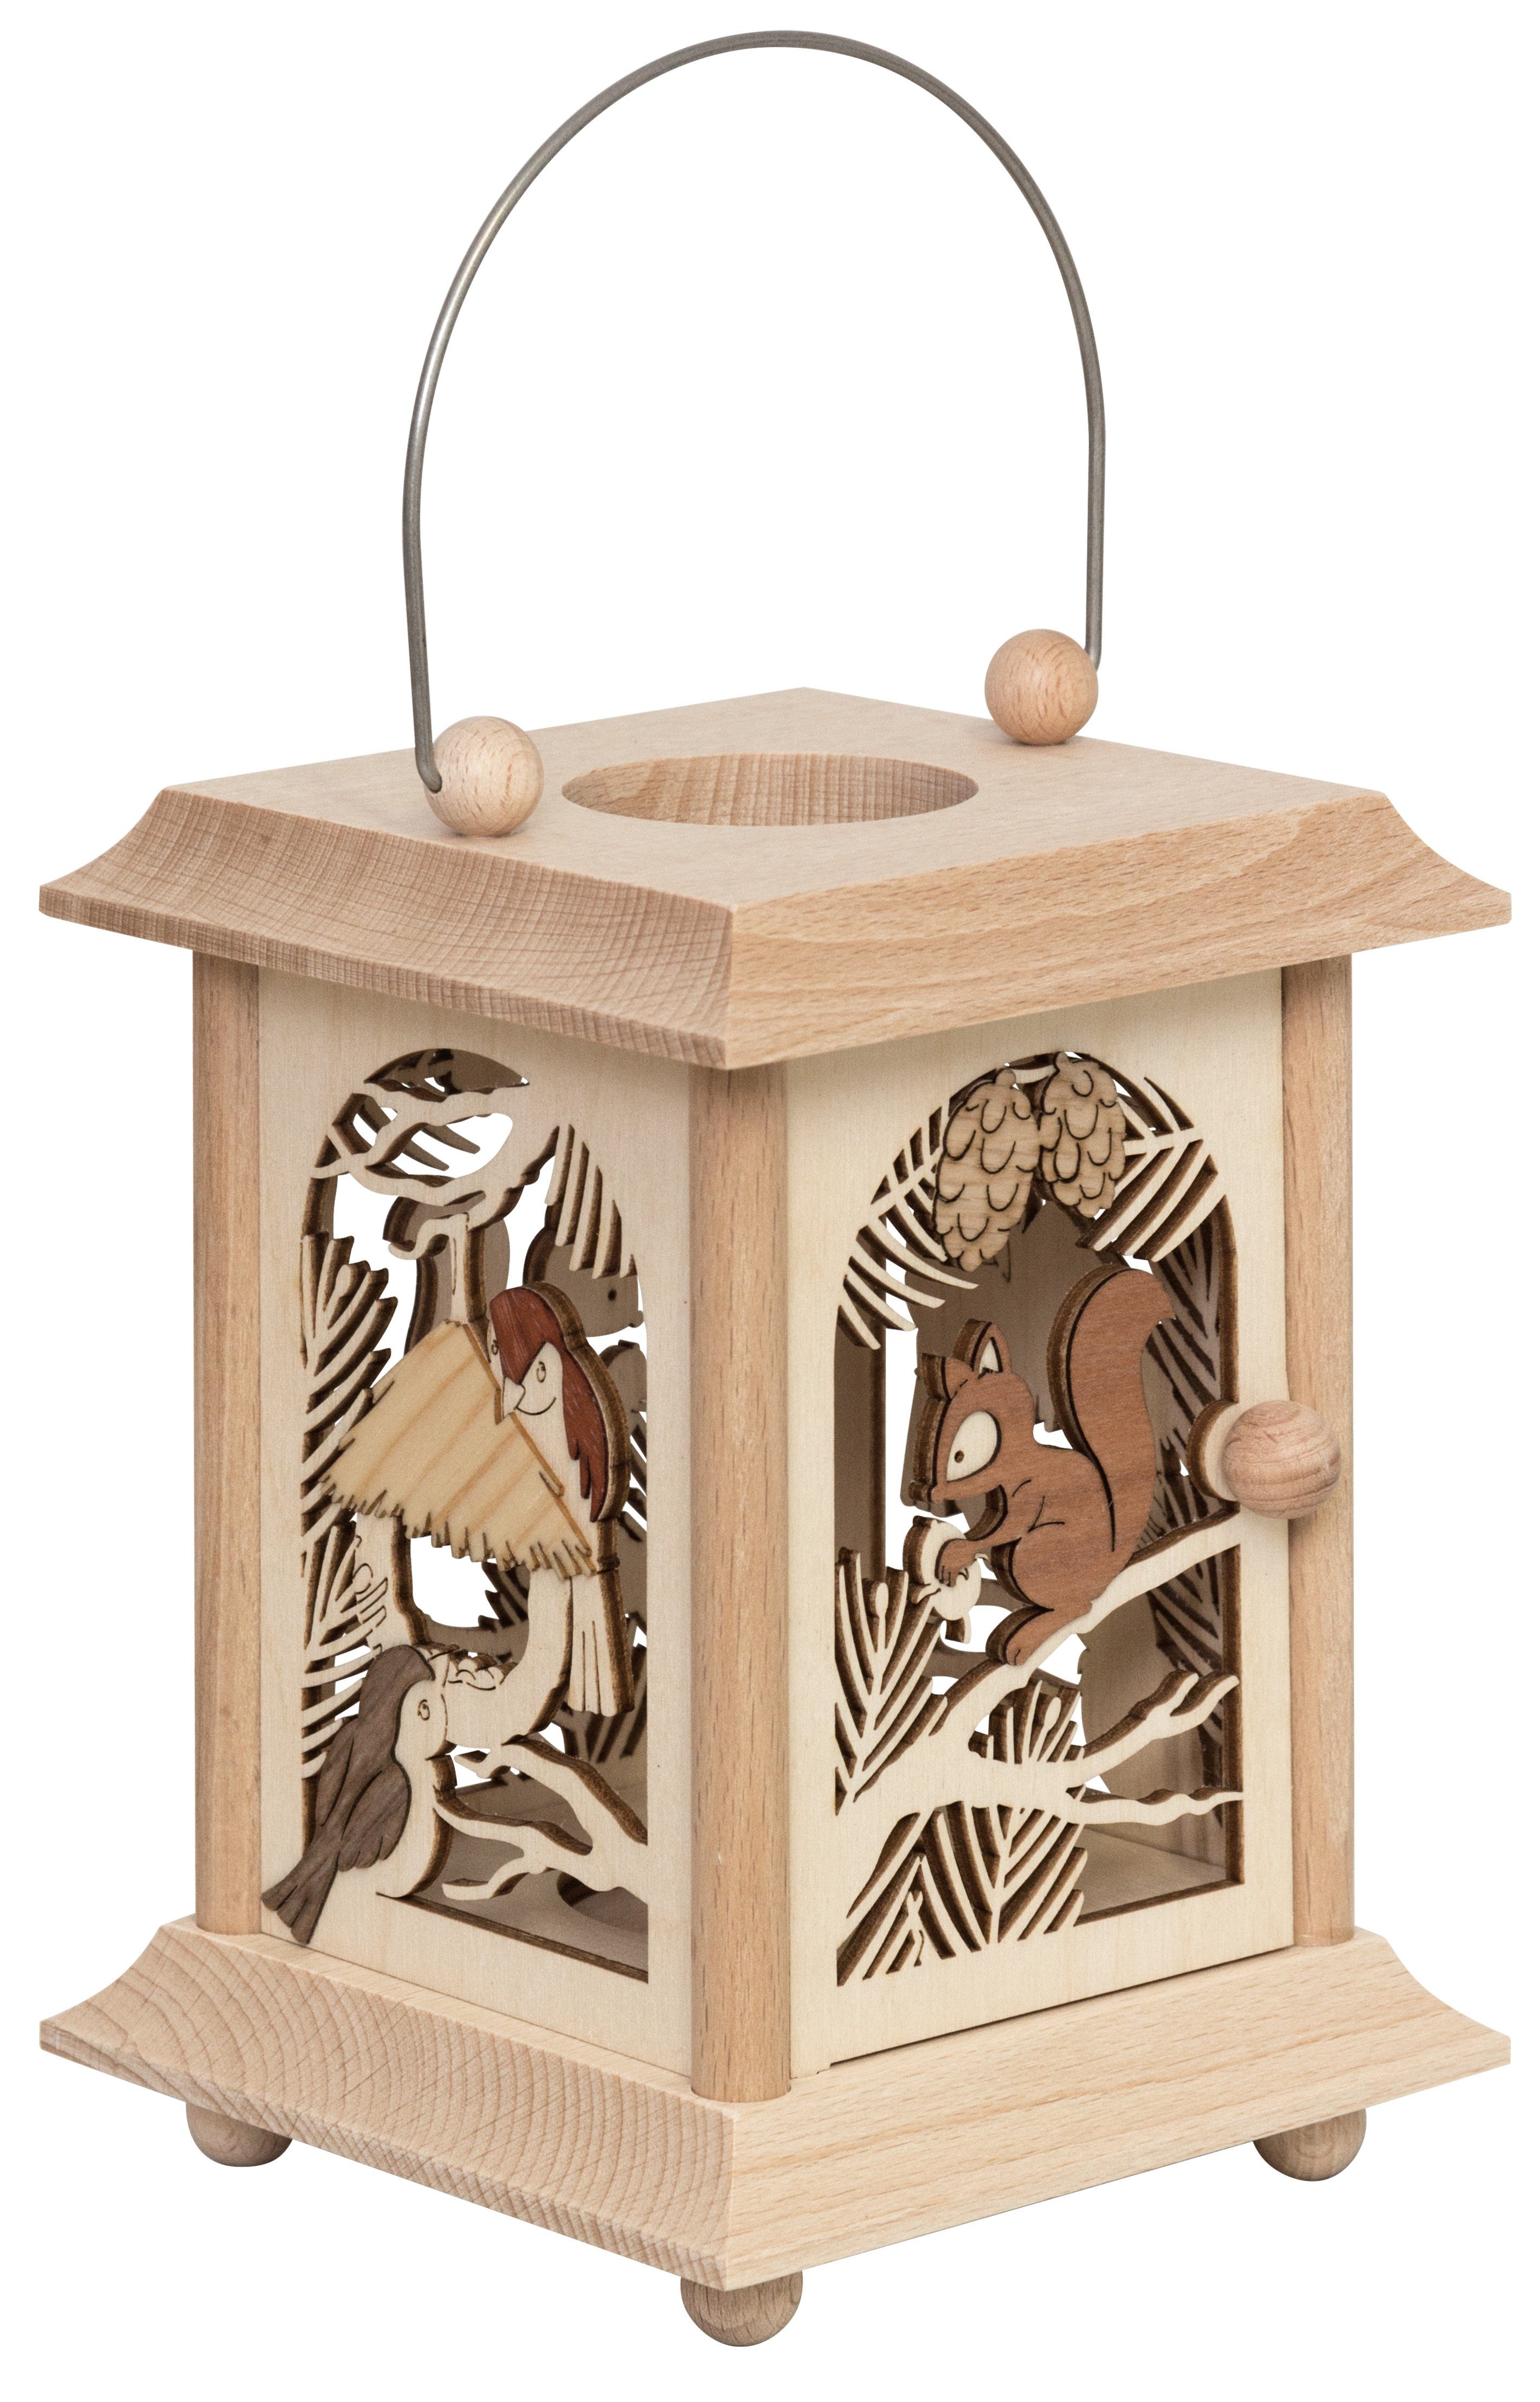 27055, Made & Holz, Tischlaterne Eichhörnchen hochwertige Kuhnert in Kerzenlaterne Germany Vogel, aus